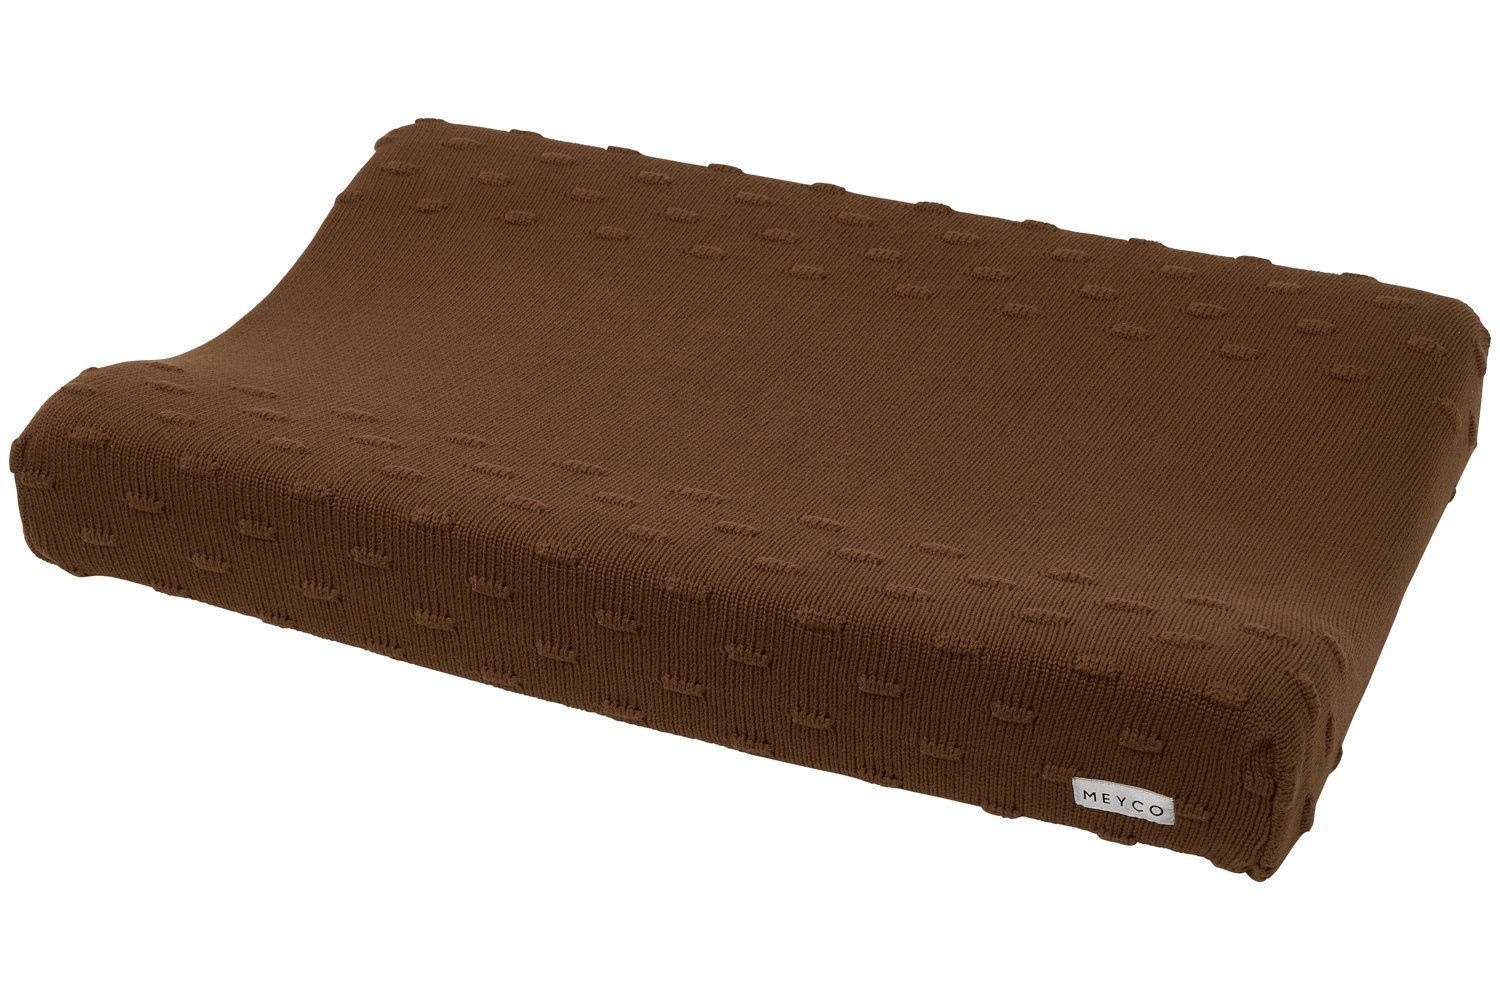 Meyco Baby Wickelauflagenbezug Knots Chocolate (1-tlg), 50x70cm | Wickelauflagen-Bezüge